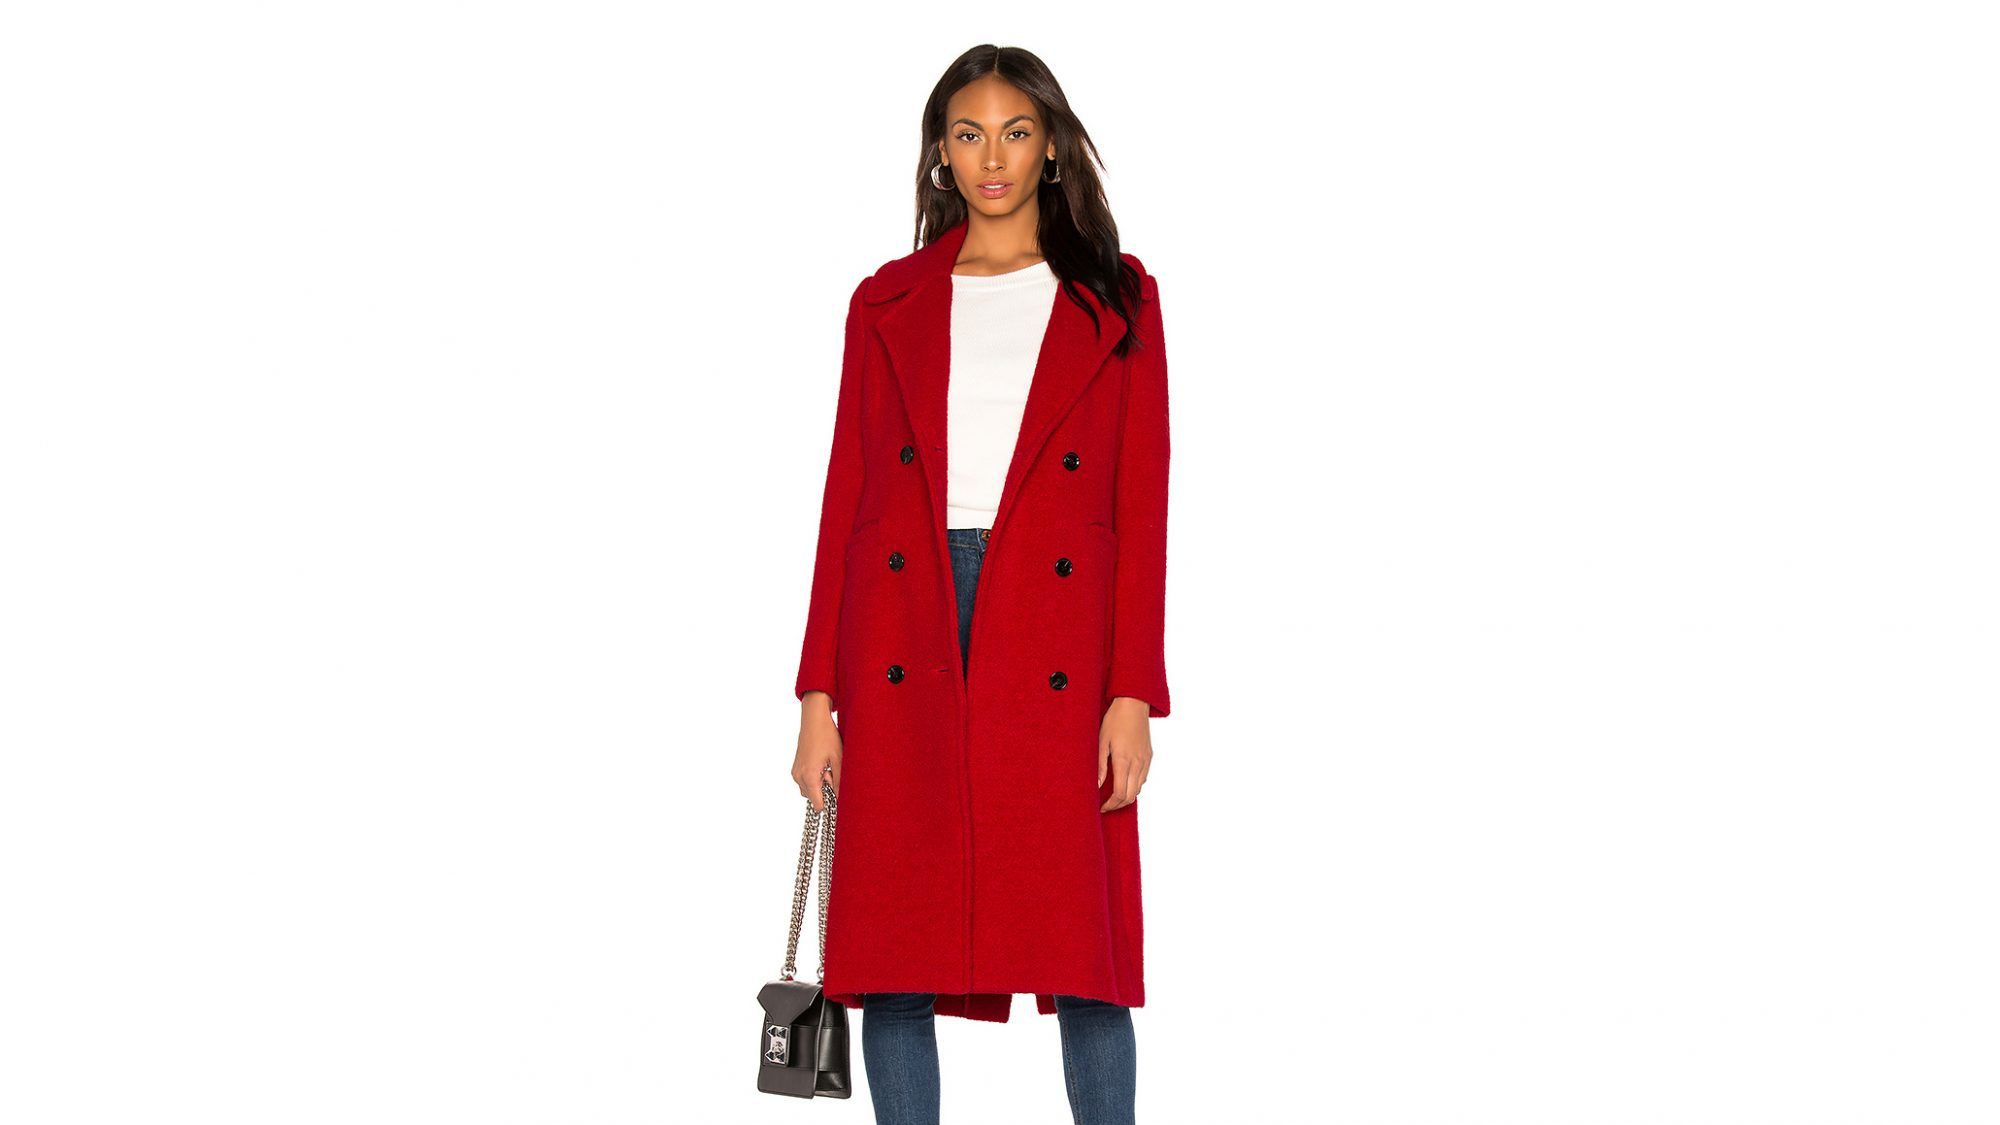 Meghan Markle Қызыл пальто: Бардо